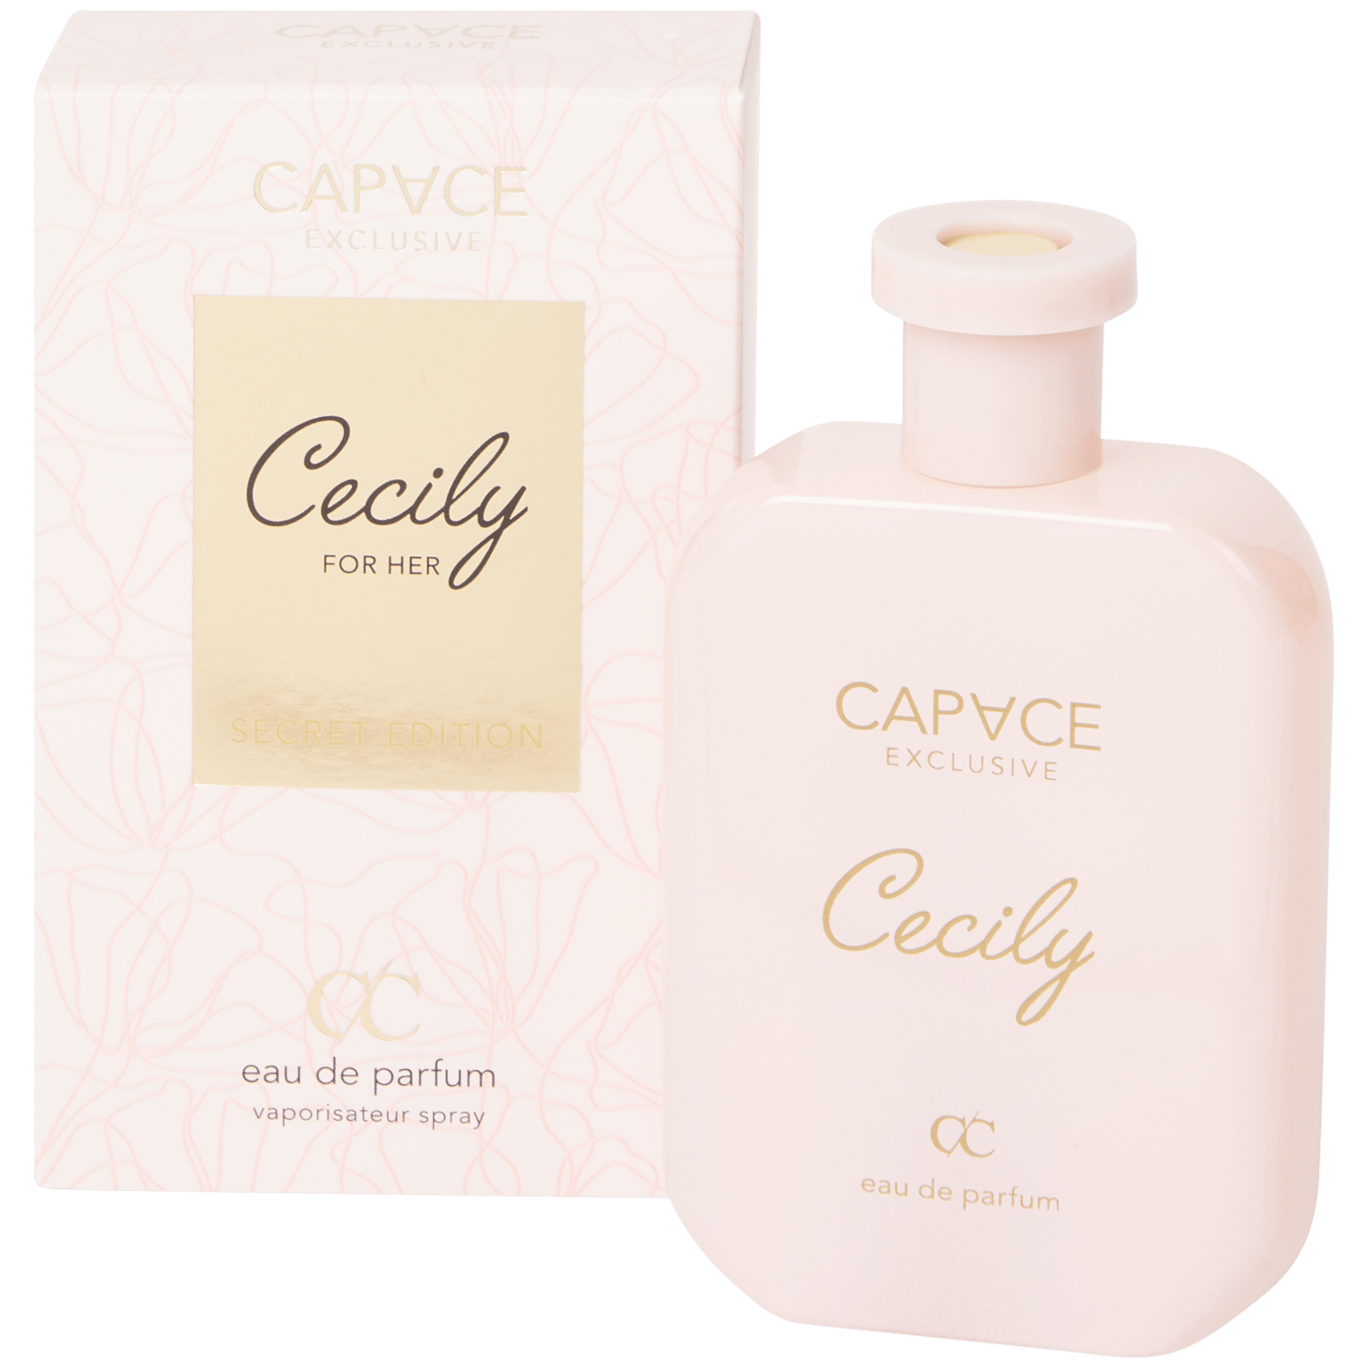 Calamiteit Fractie comfortabel Capace Exclusive eau de parfum Cecily | Action.com